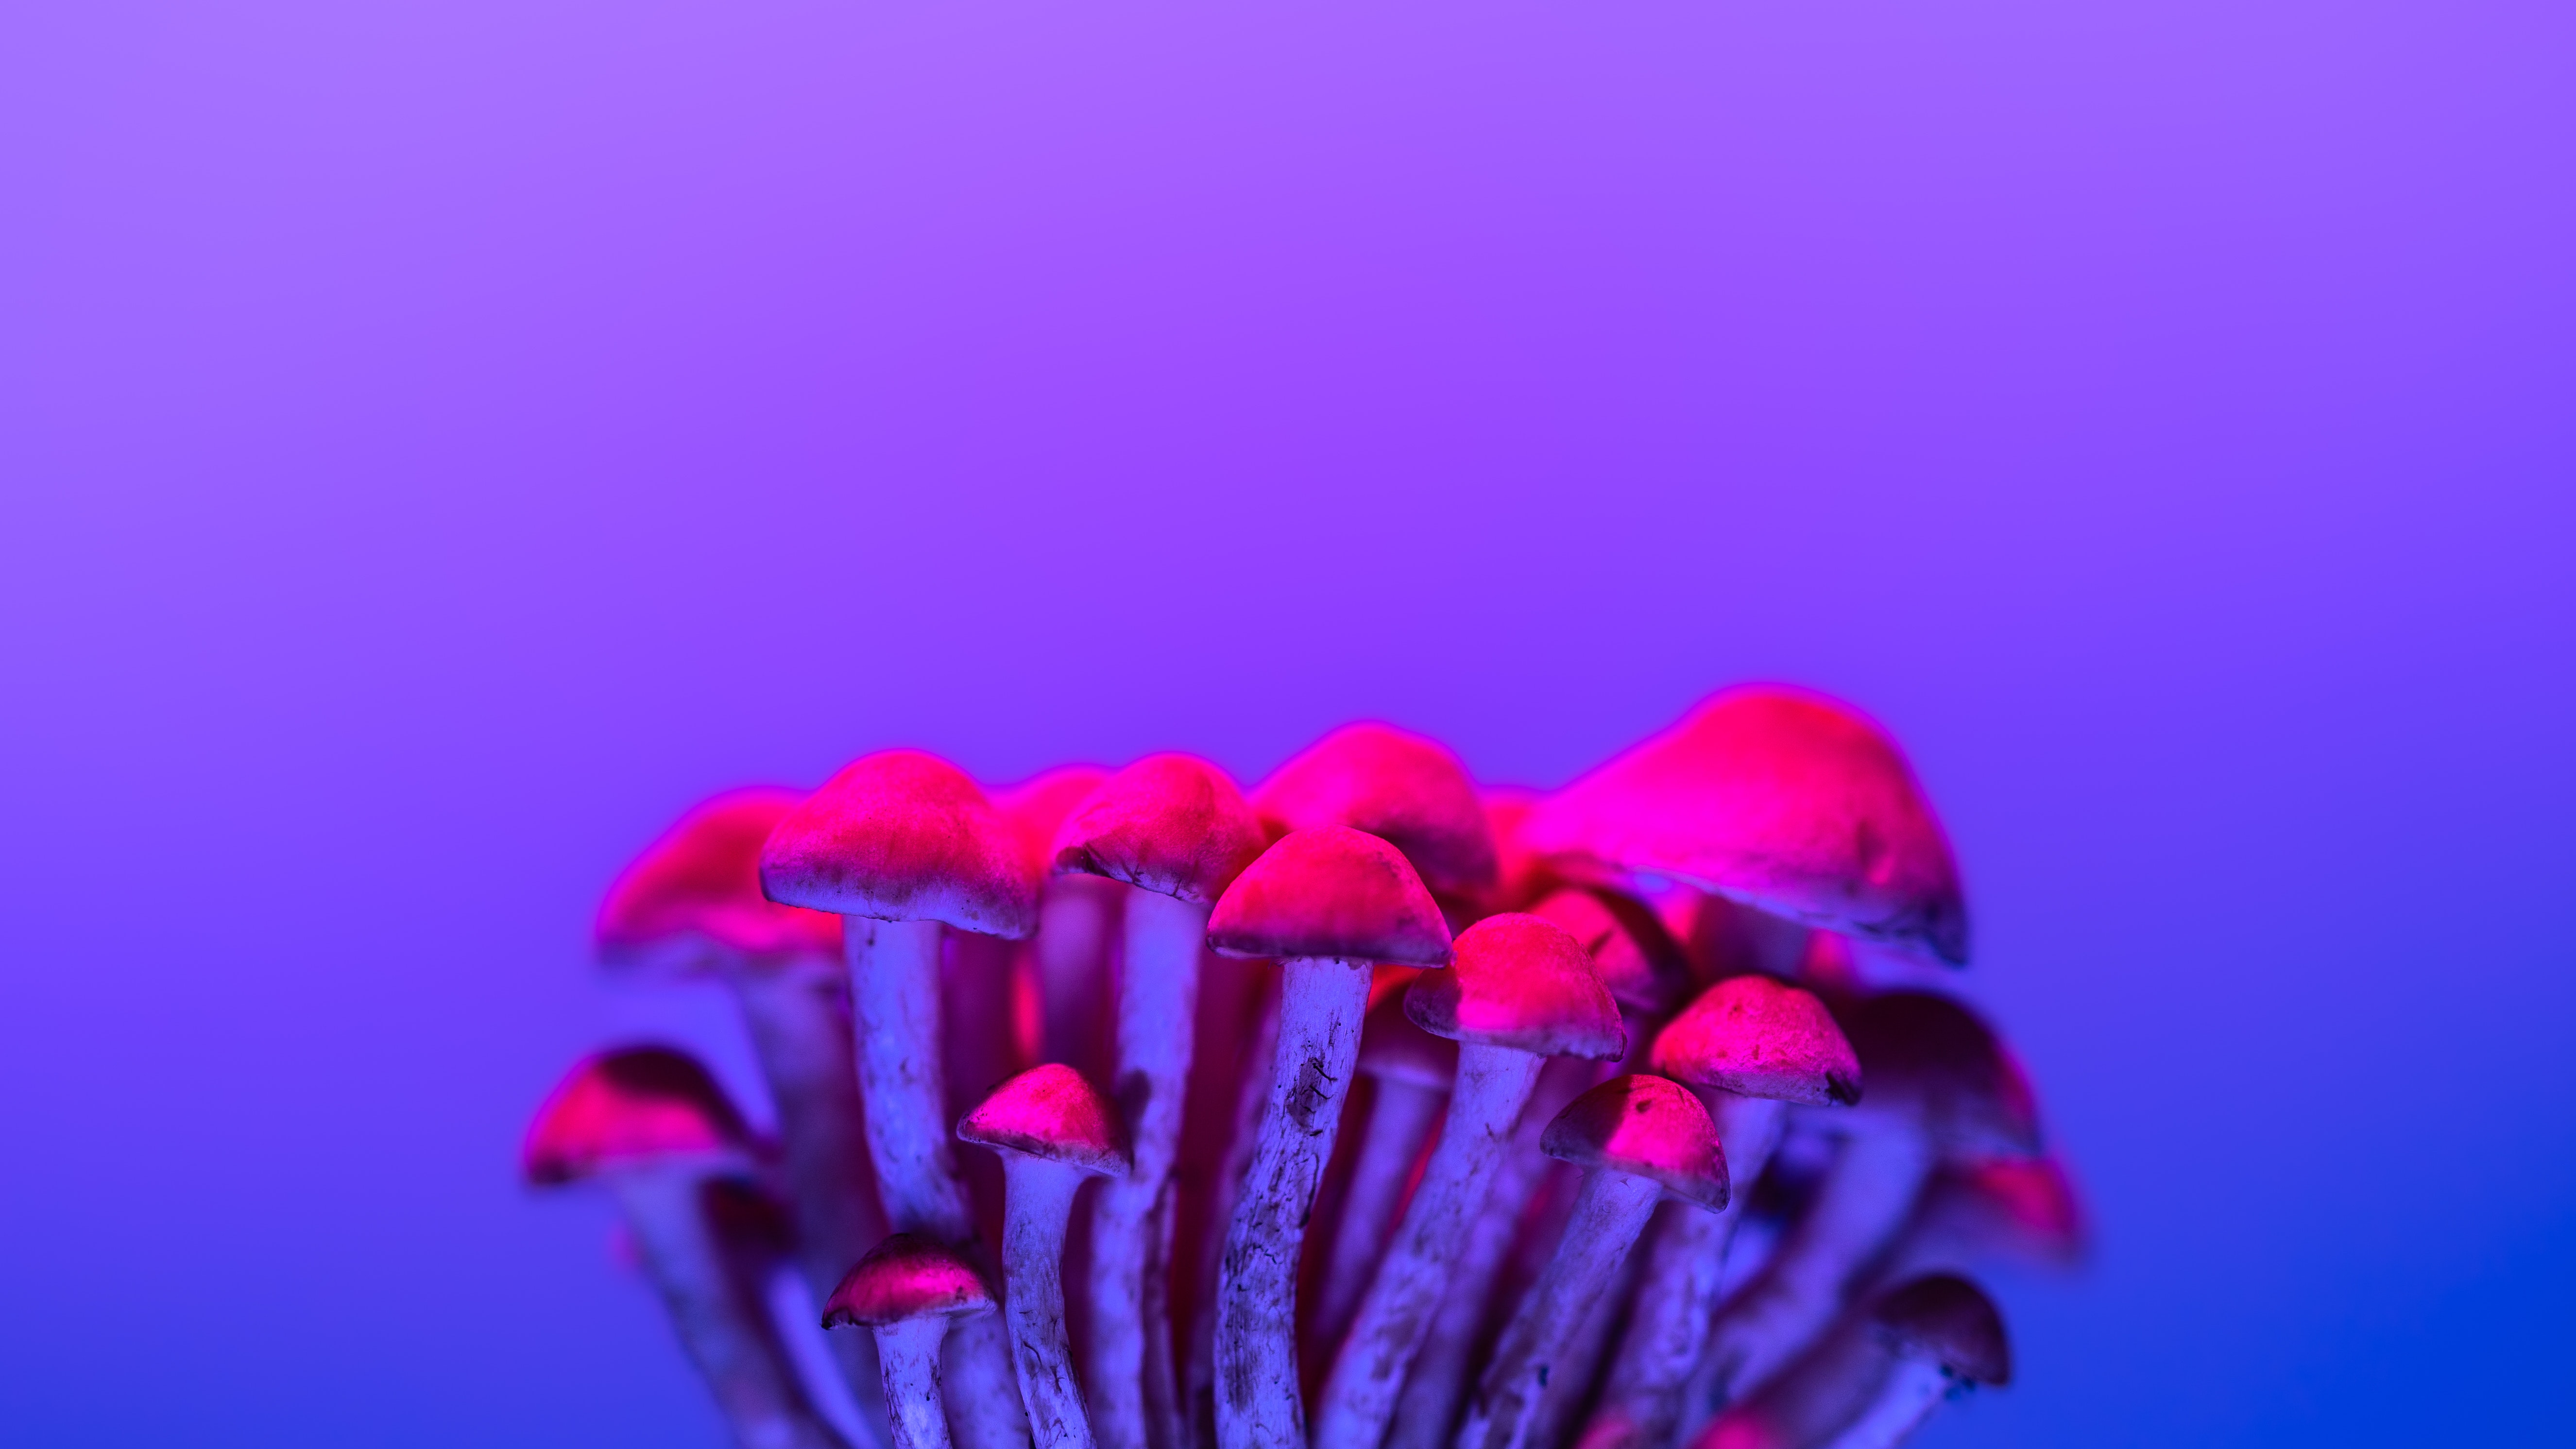 Simple Background Mushroom Red Minimalism Nature 5303x2983